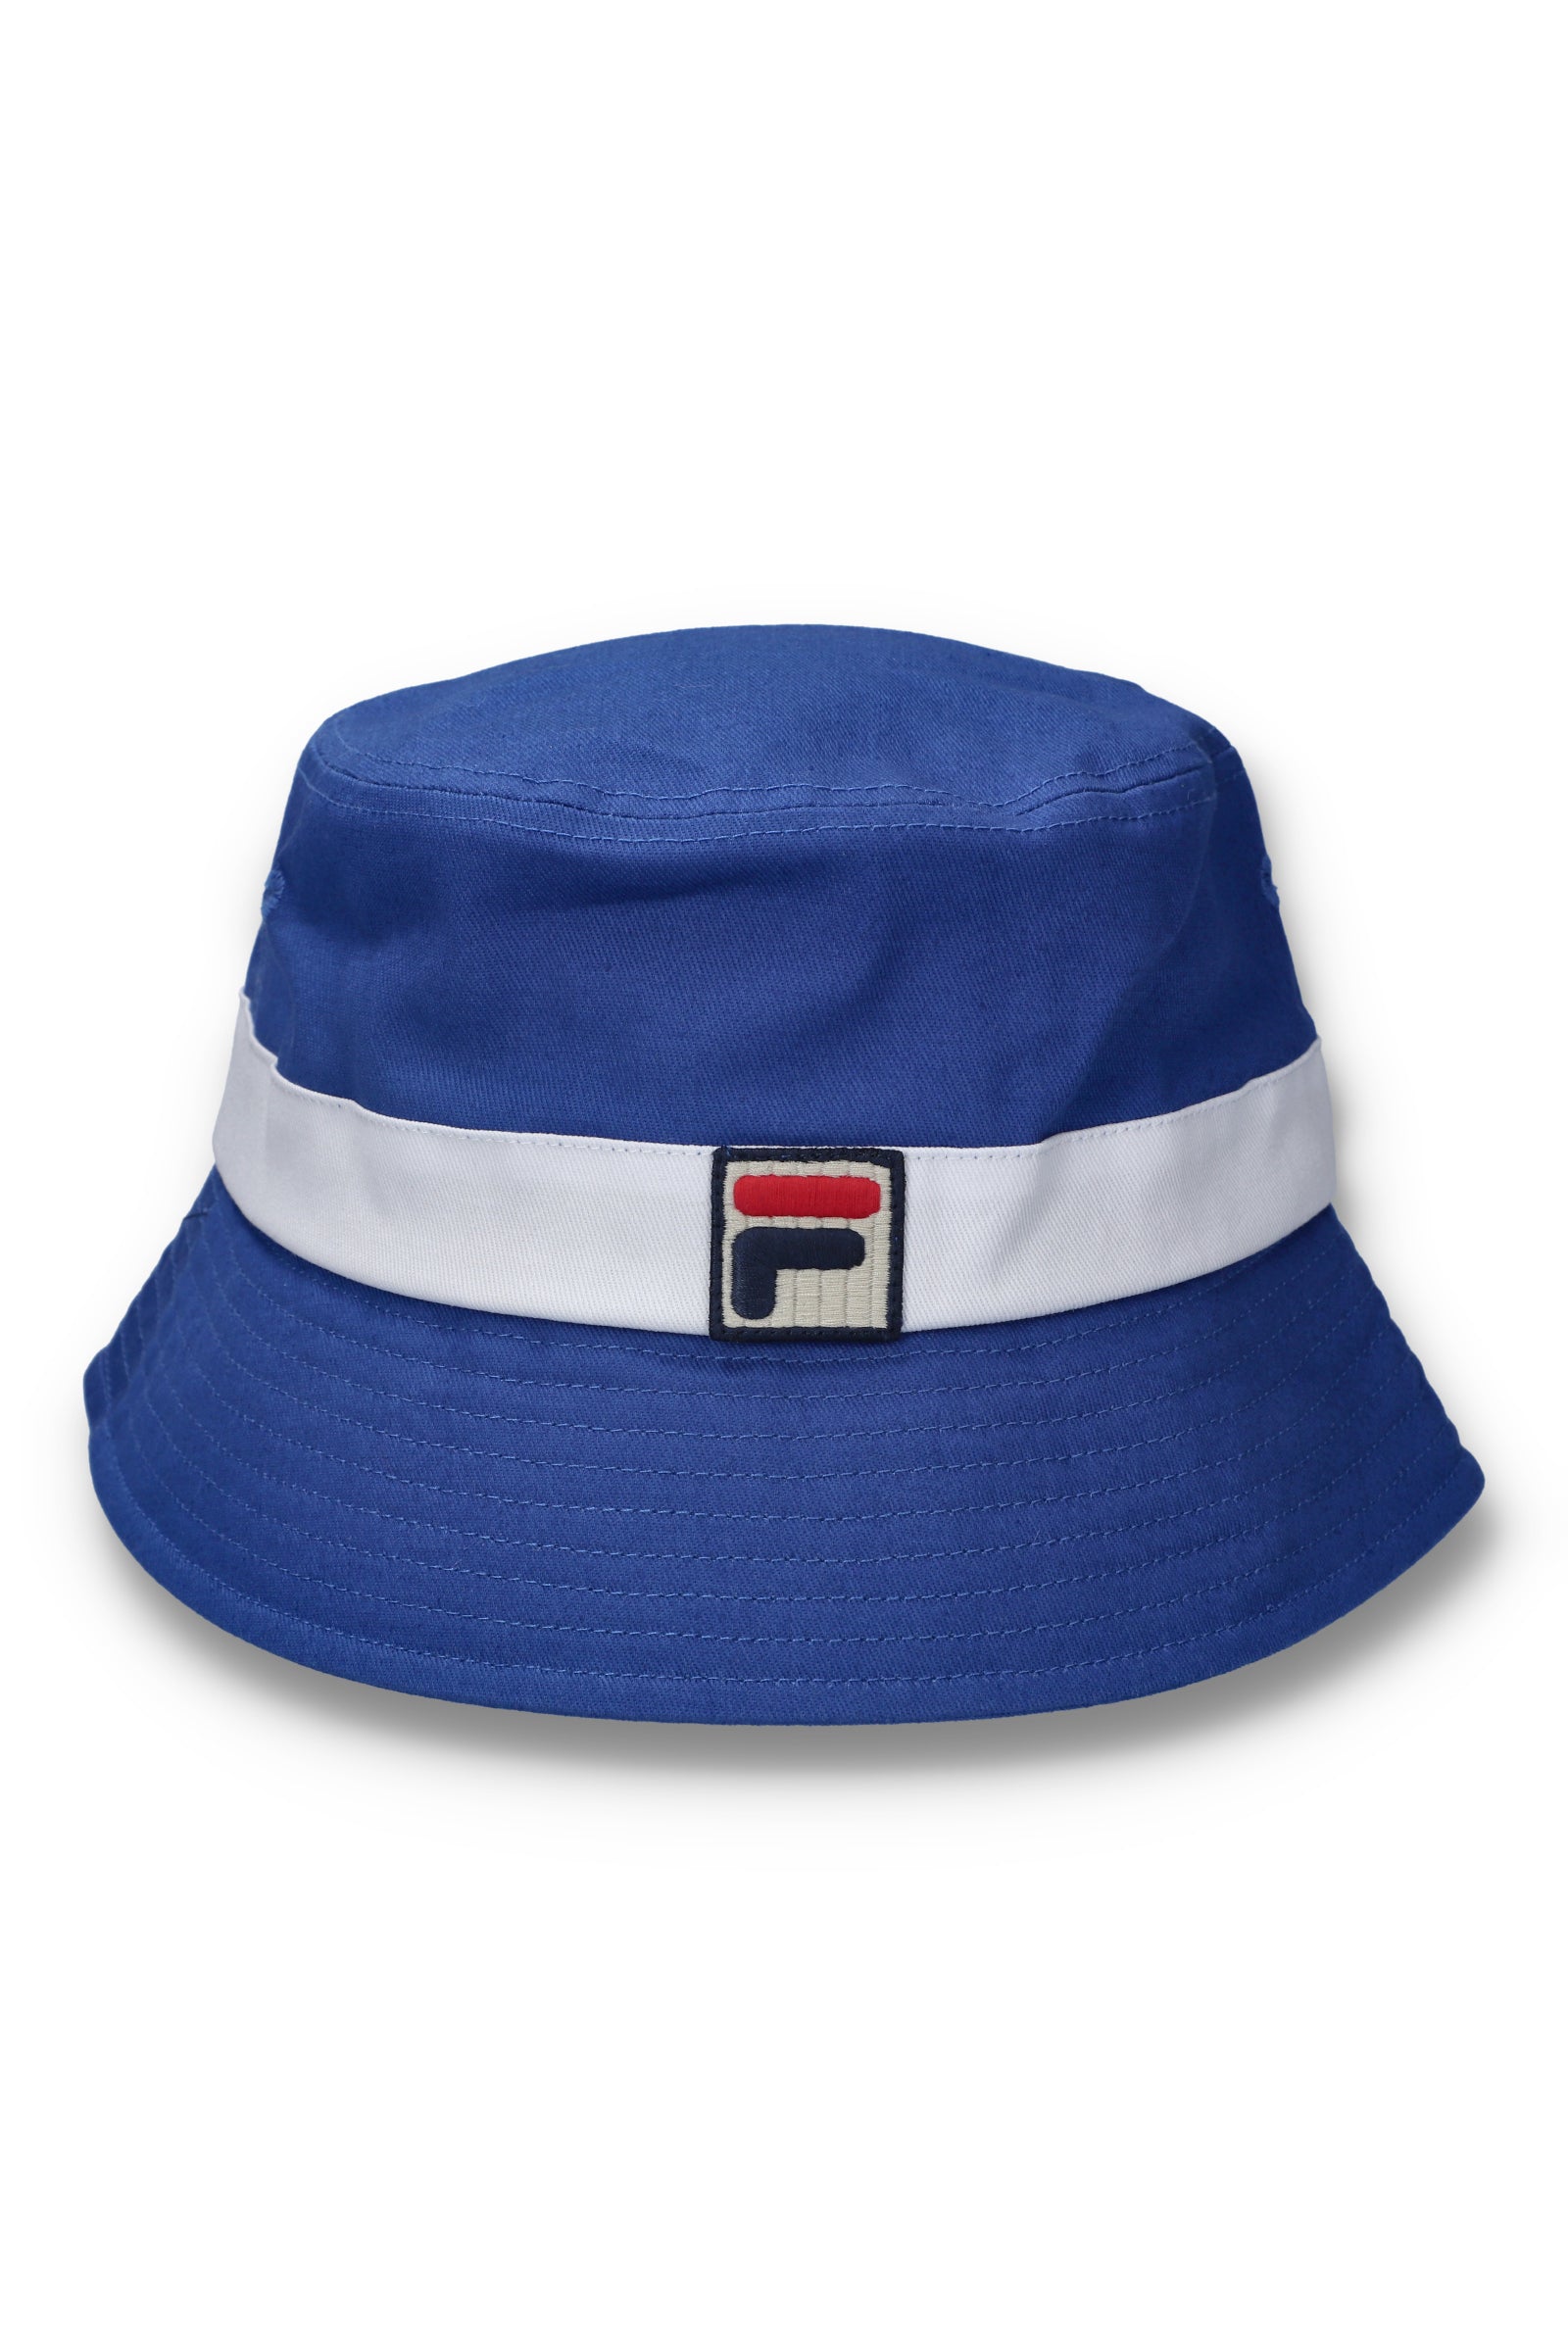 Fila Tabbs Bucket Hat - Bright Blue